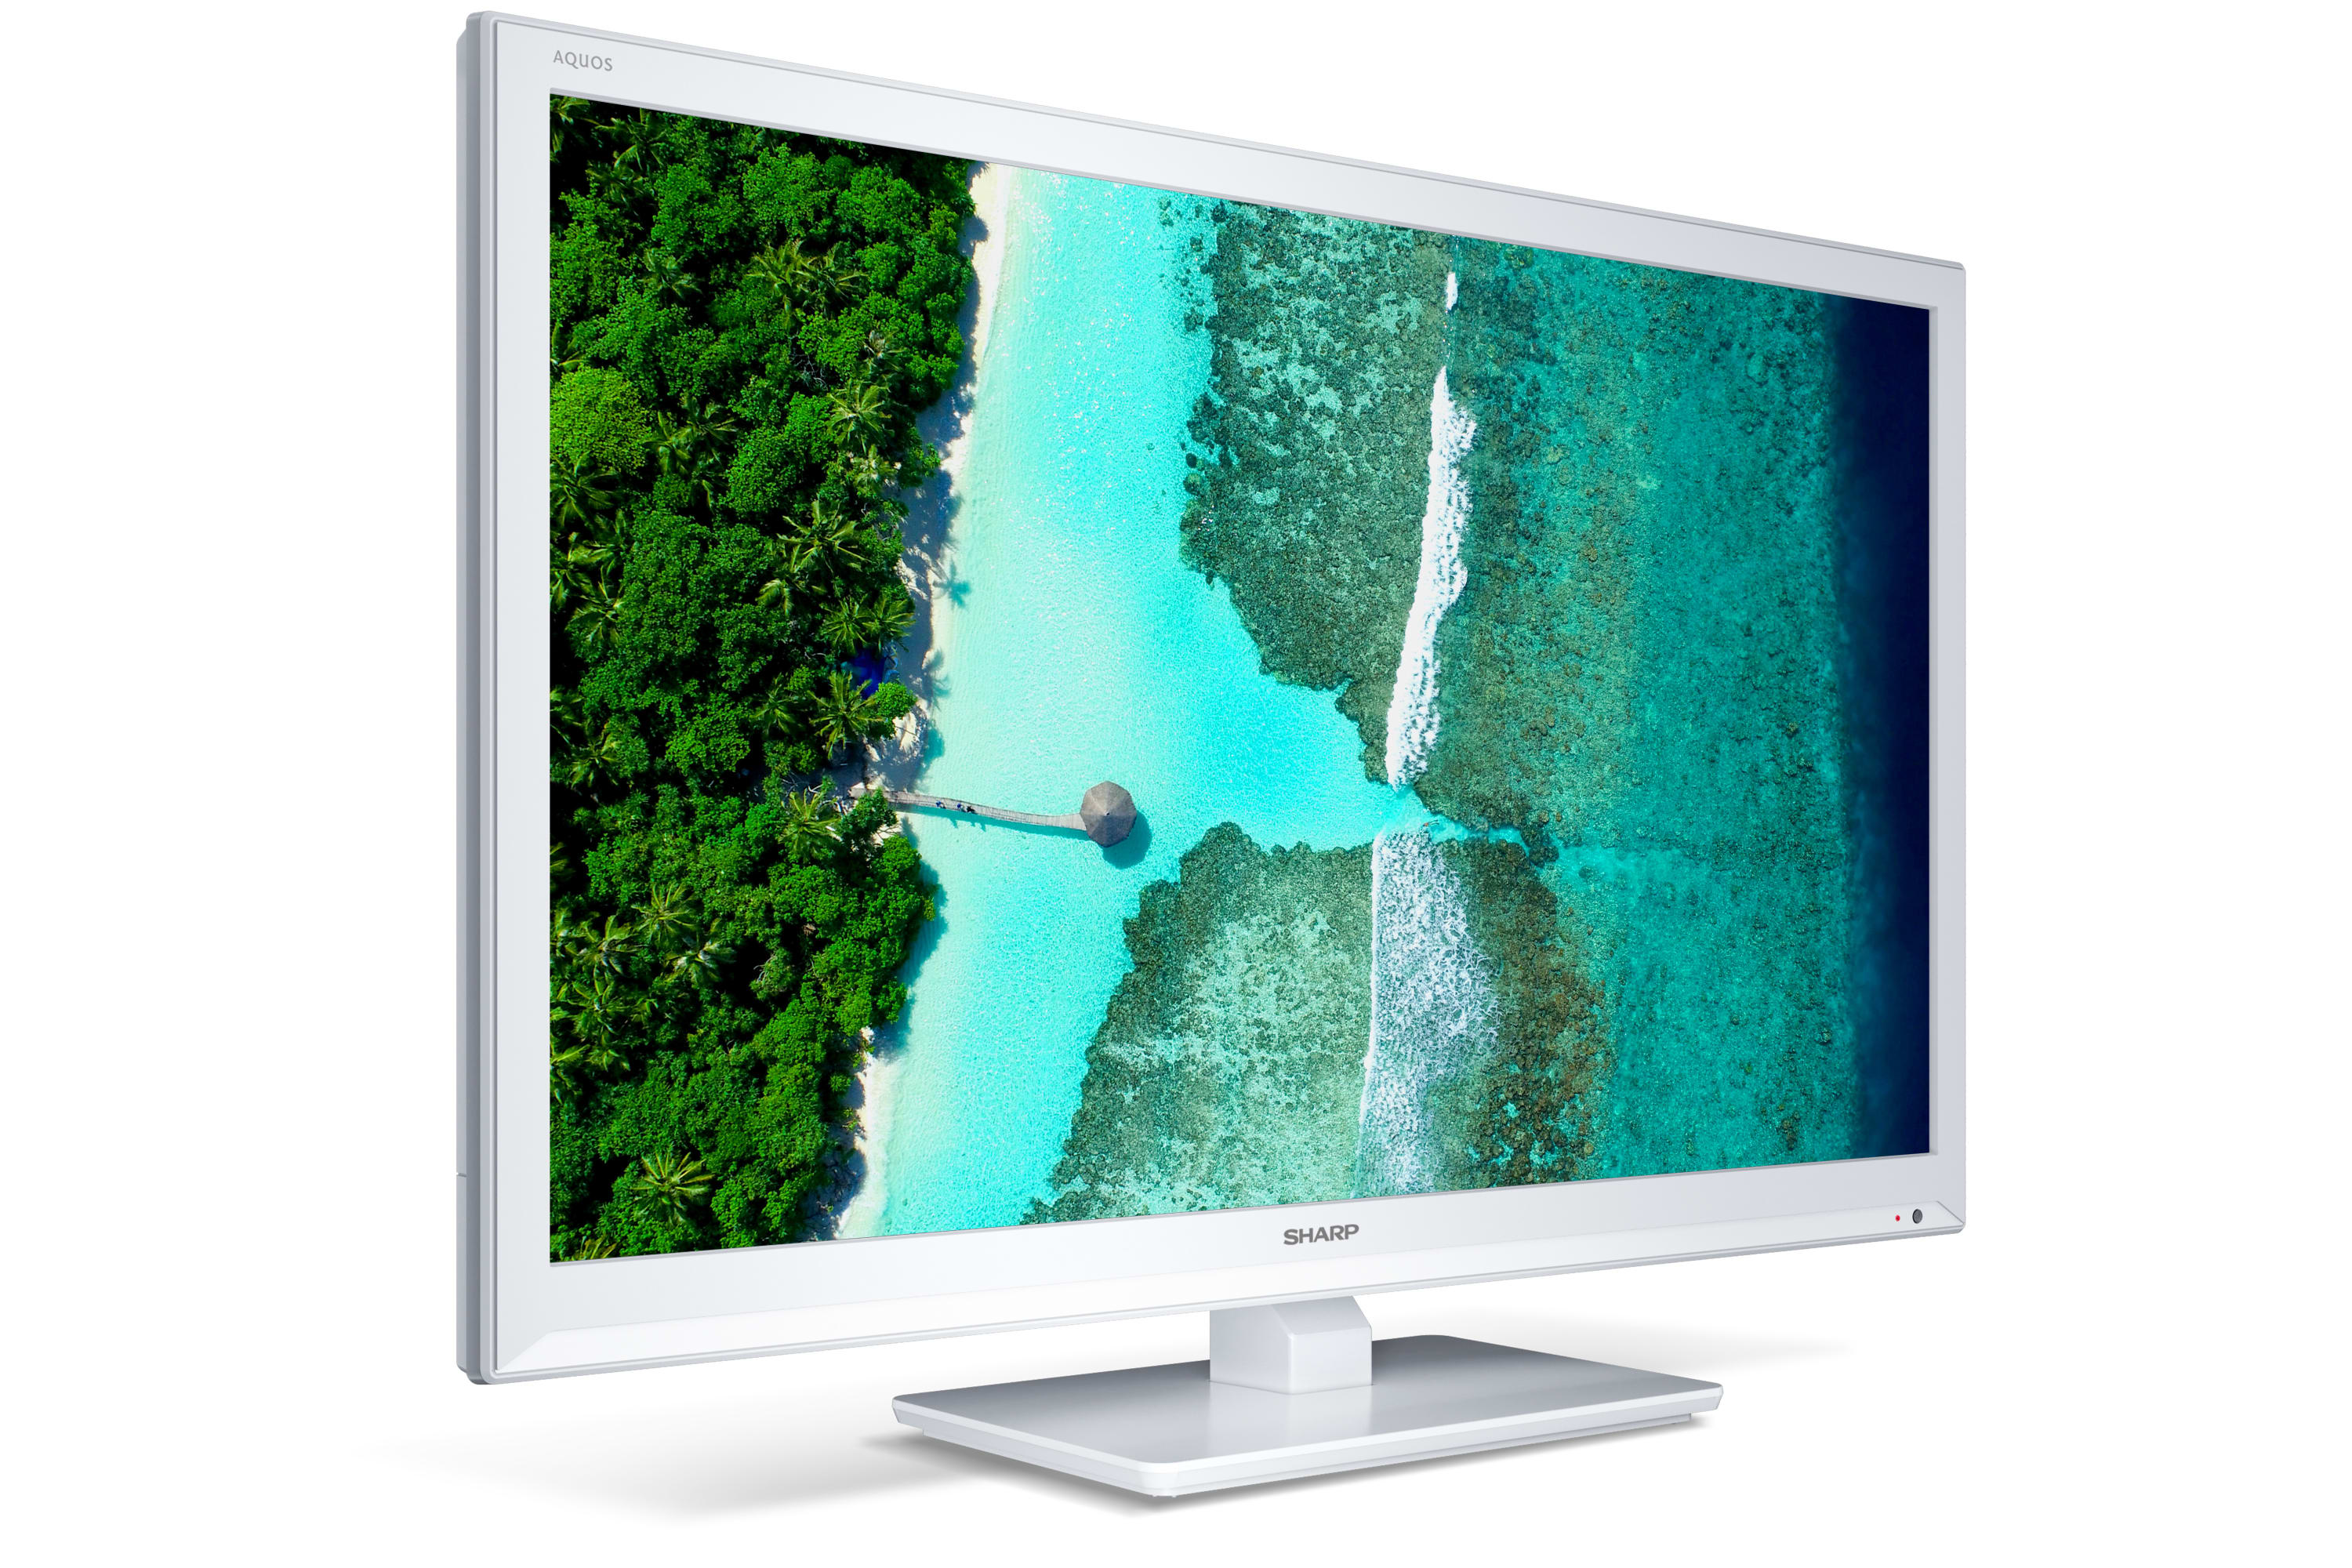 Smart TV HD/Full HD - SMART DE 24" CON CAPACIDAD HD